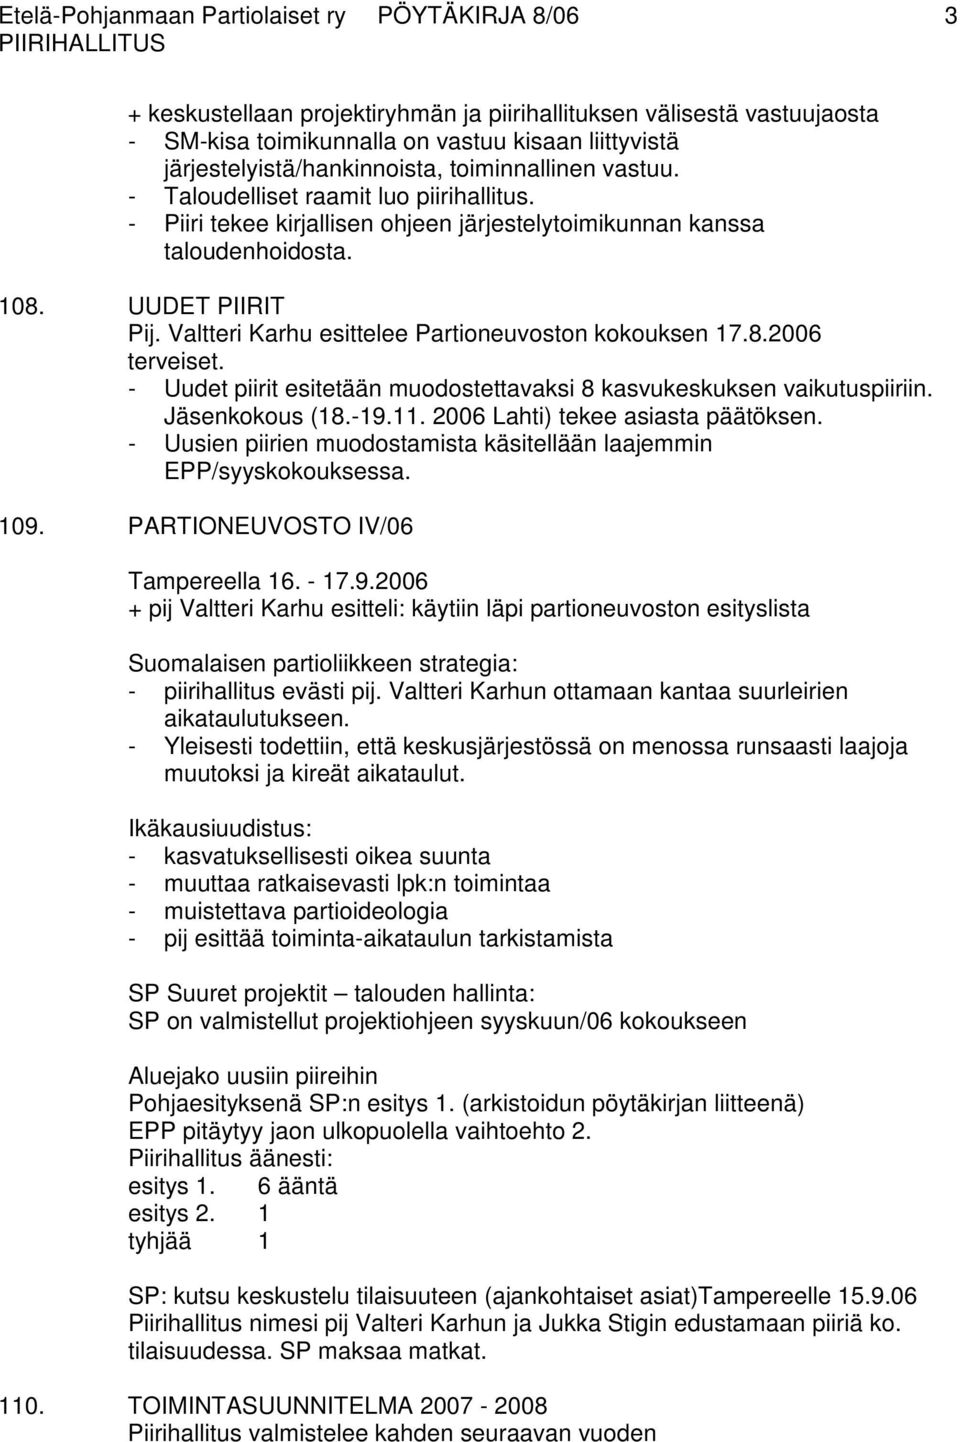 Valtteri Karhu esittelee Partioneuvoston kokouksen 17.8.2006 terveiset. - Uudet piirit esitetään muodostettavaksi 8 kasvukeskuksen vaikutuspiiriin. Jäsenkokous (18.-19.11.